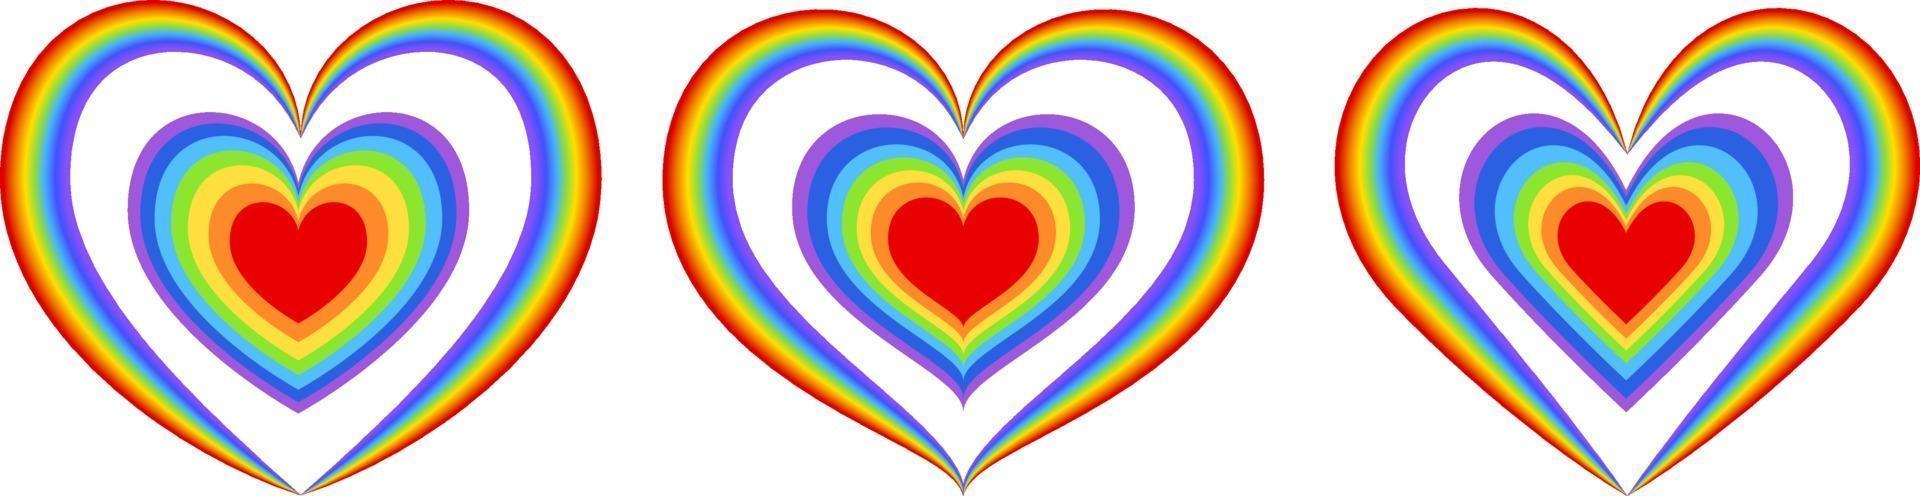 conjunto de diferentes formas de coração de arco-íris vetor